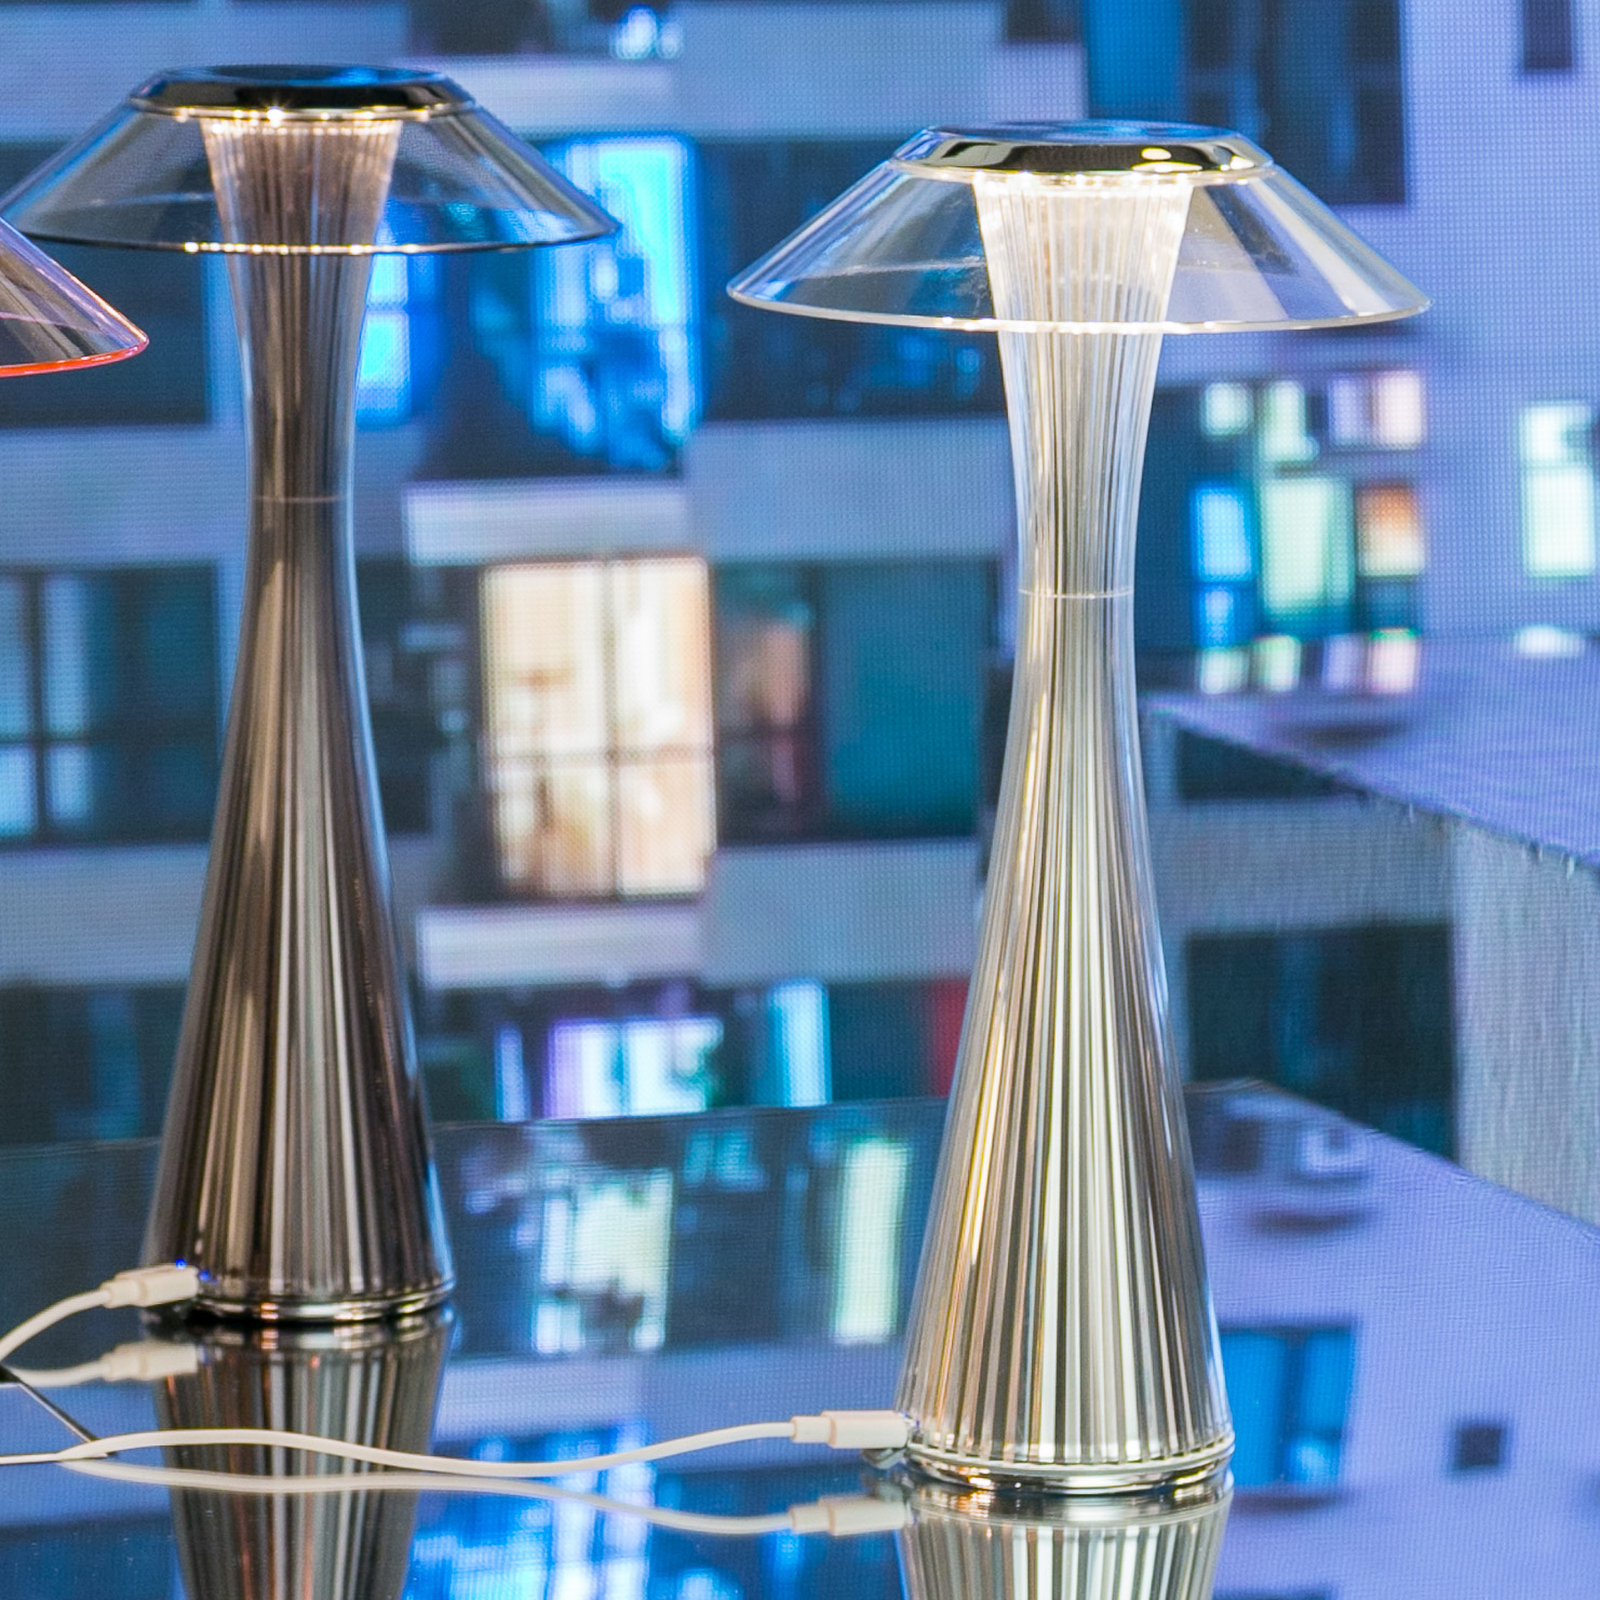 Kartell Space - LED-designer-bordlampe, titan